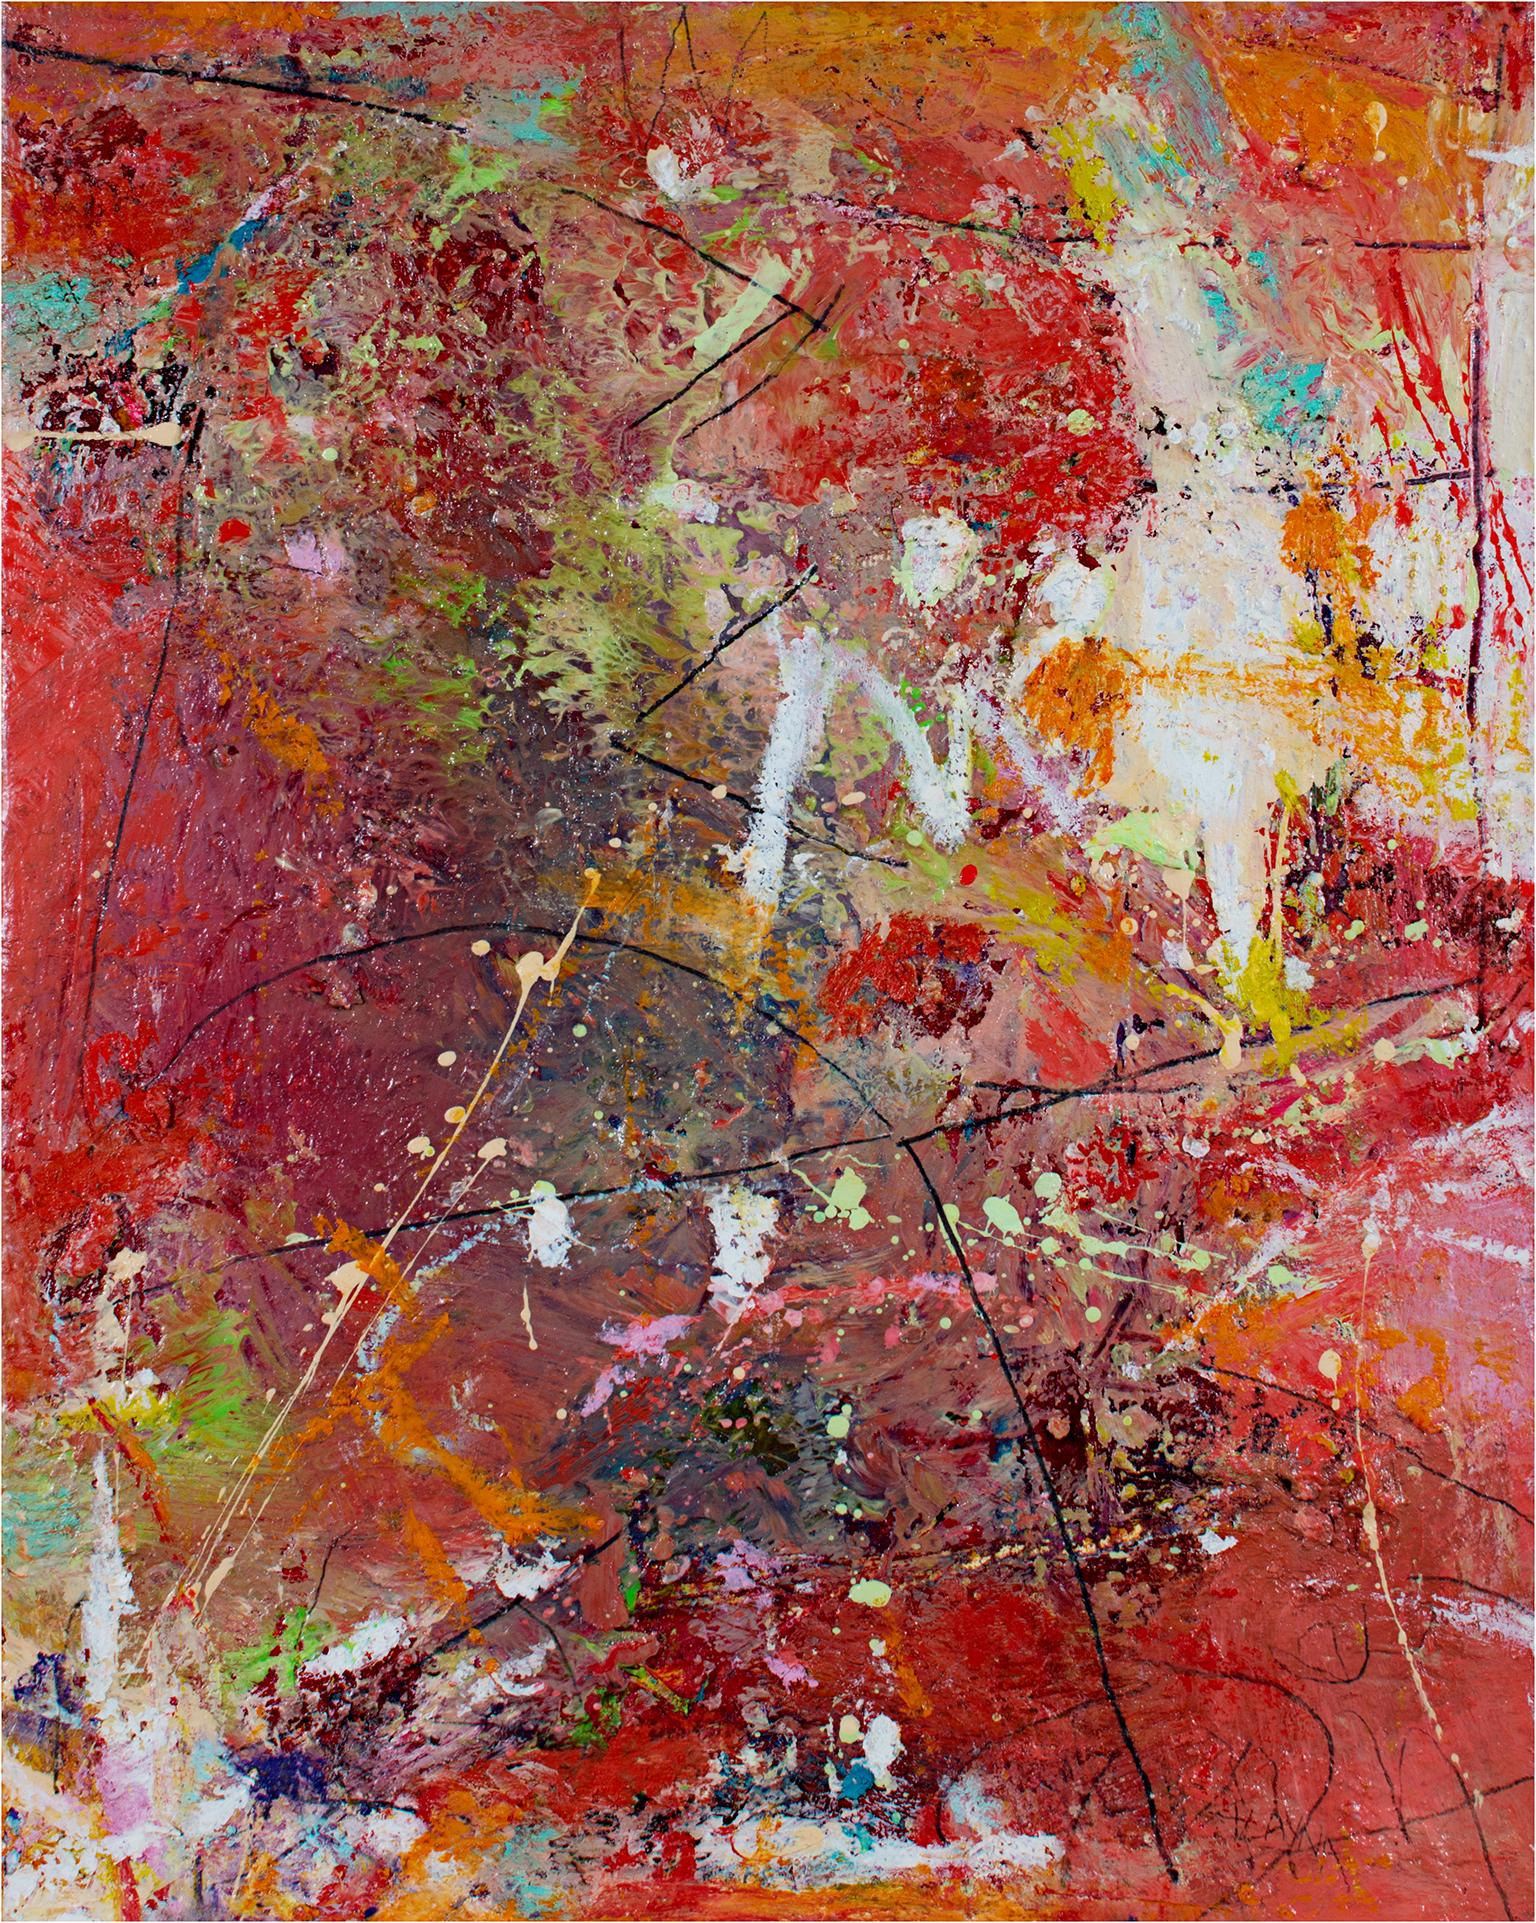 "Let It Happen" est une peinture à l'huile sur toile d'Alayna Rose. L'artiste a signé l'œuvre en bas à droite. Cette peinture abstraite présente une variété de marques gestuelles et expressionnistes de différentes couleurs - vert, bleu, orange,